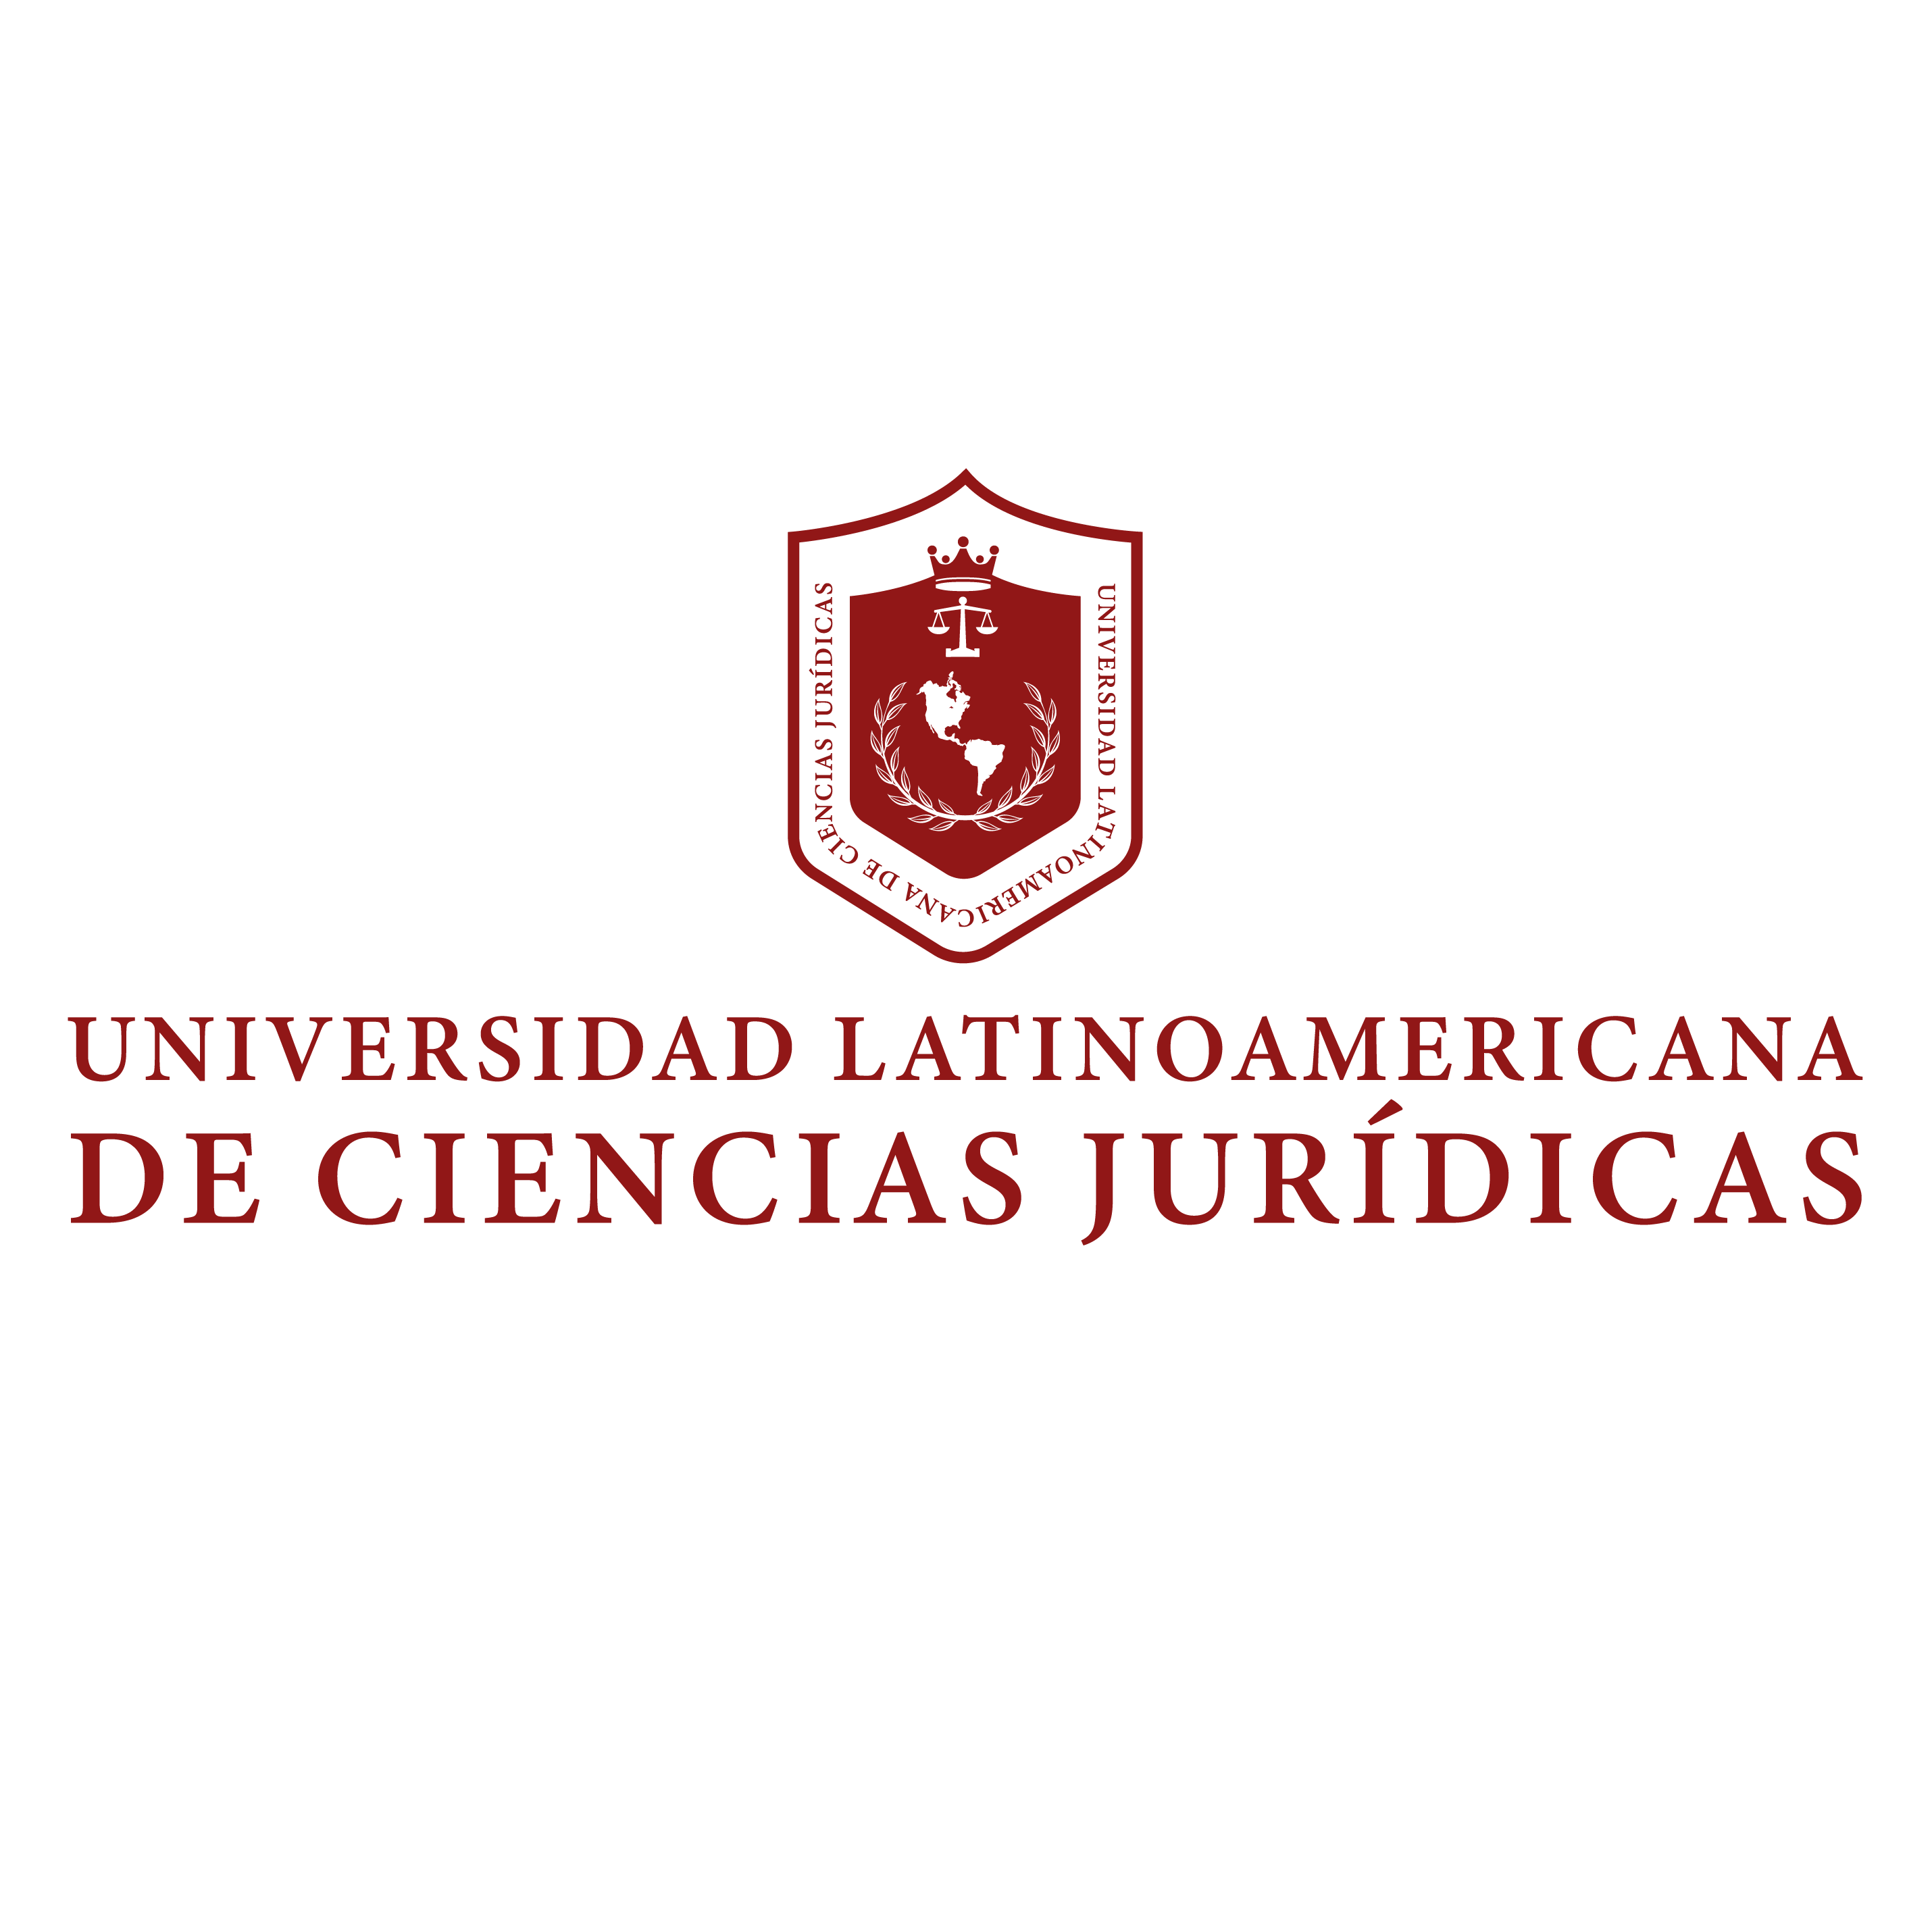 Universidad Latinoamericana de Ciencias Juridicas